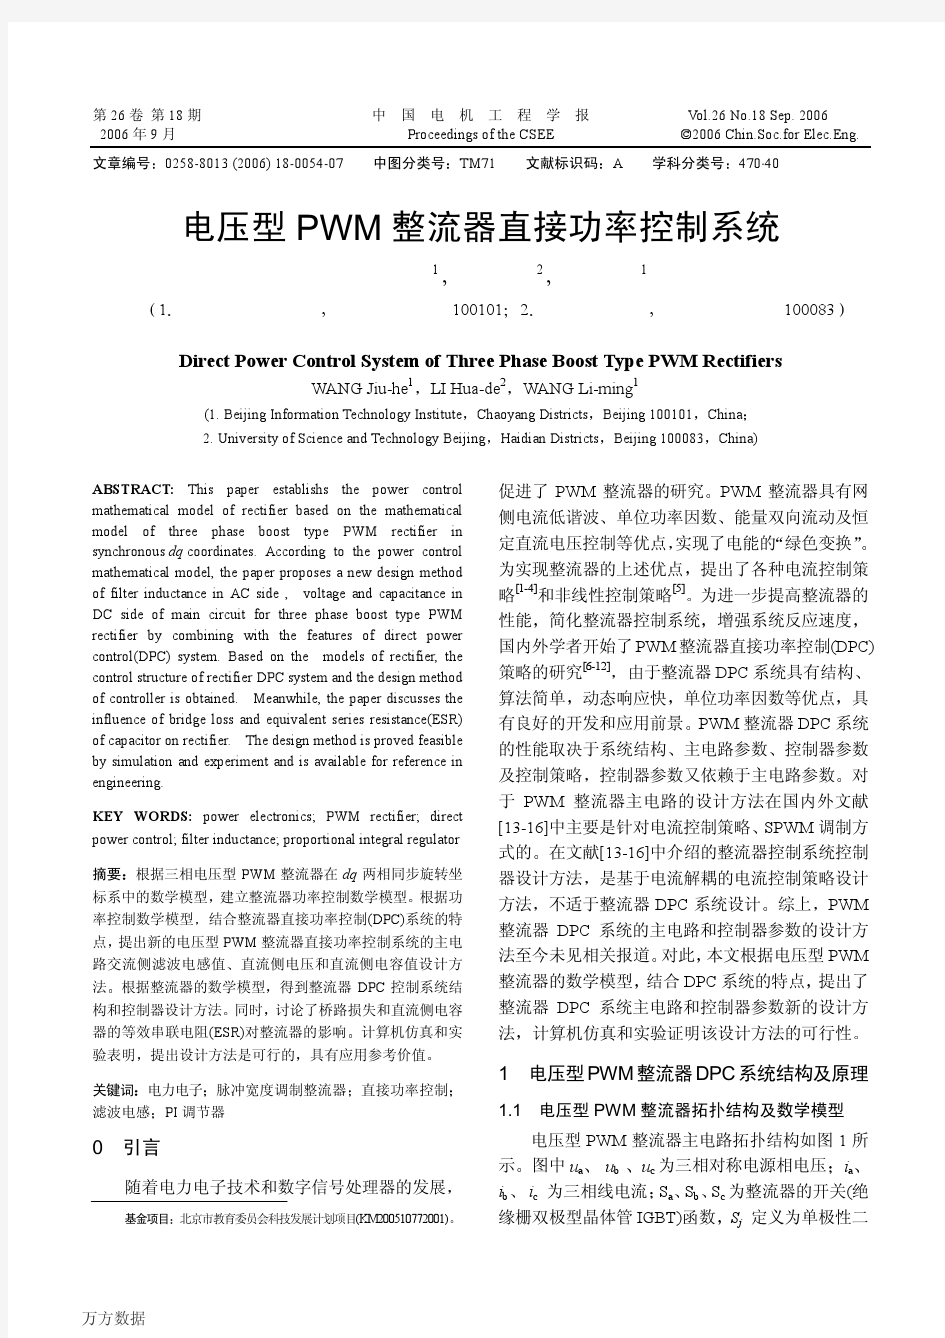 电压型PWM整流器直接功率控制系统